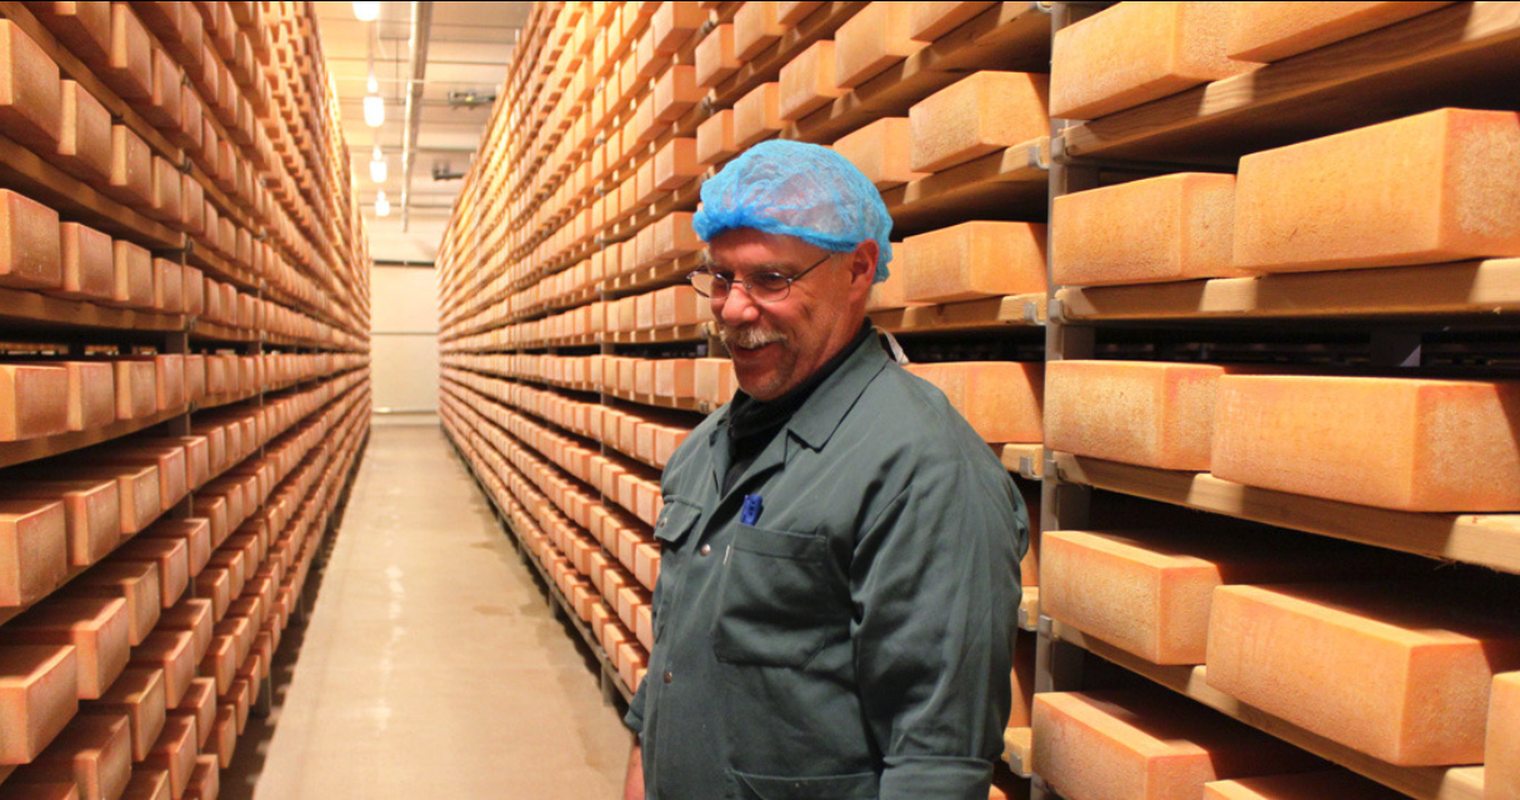 Gestapelt bis zur Decke: Hier reifen tausende Tonnen Käse